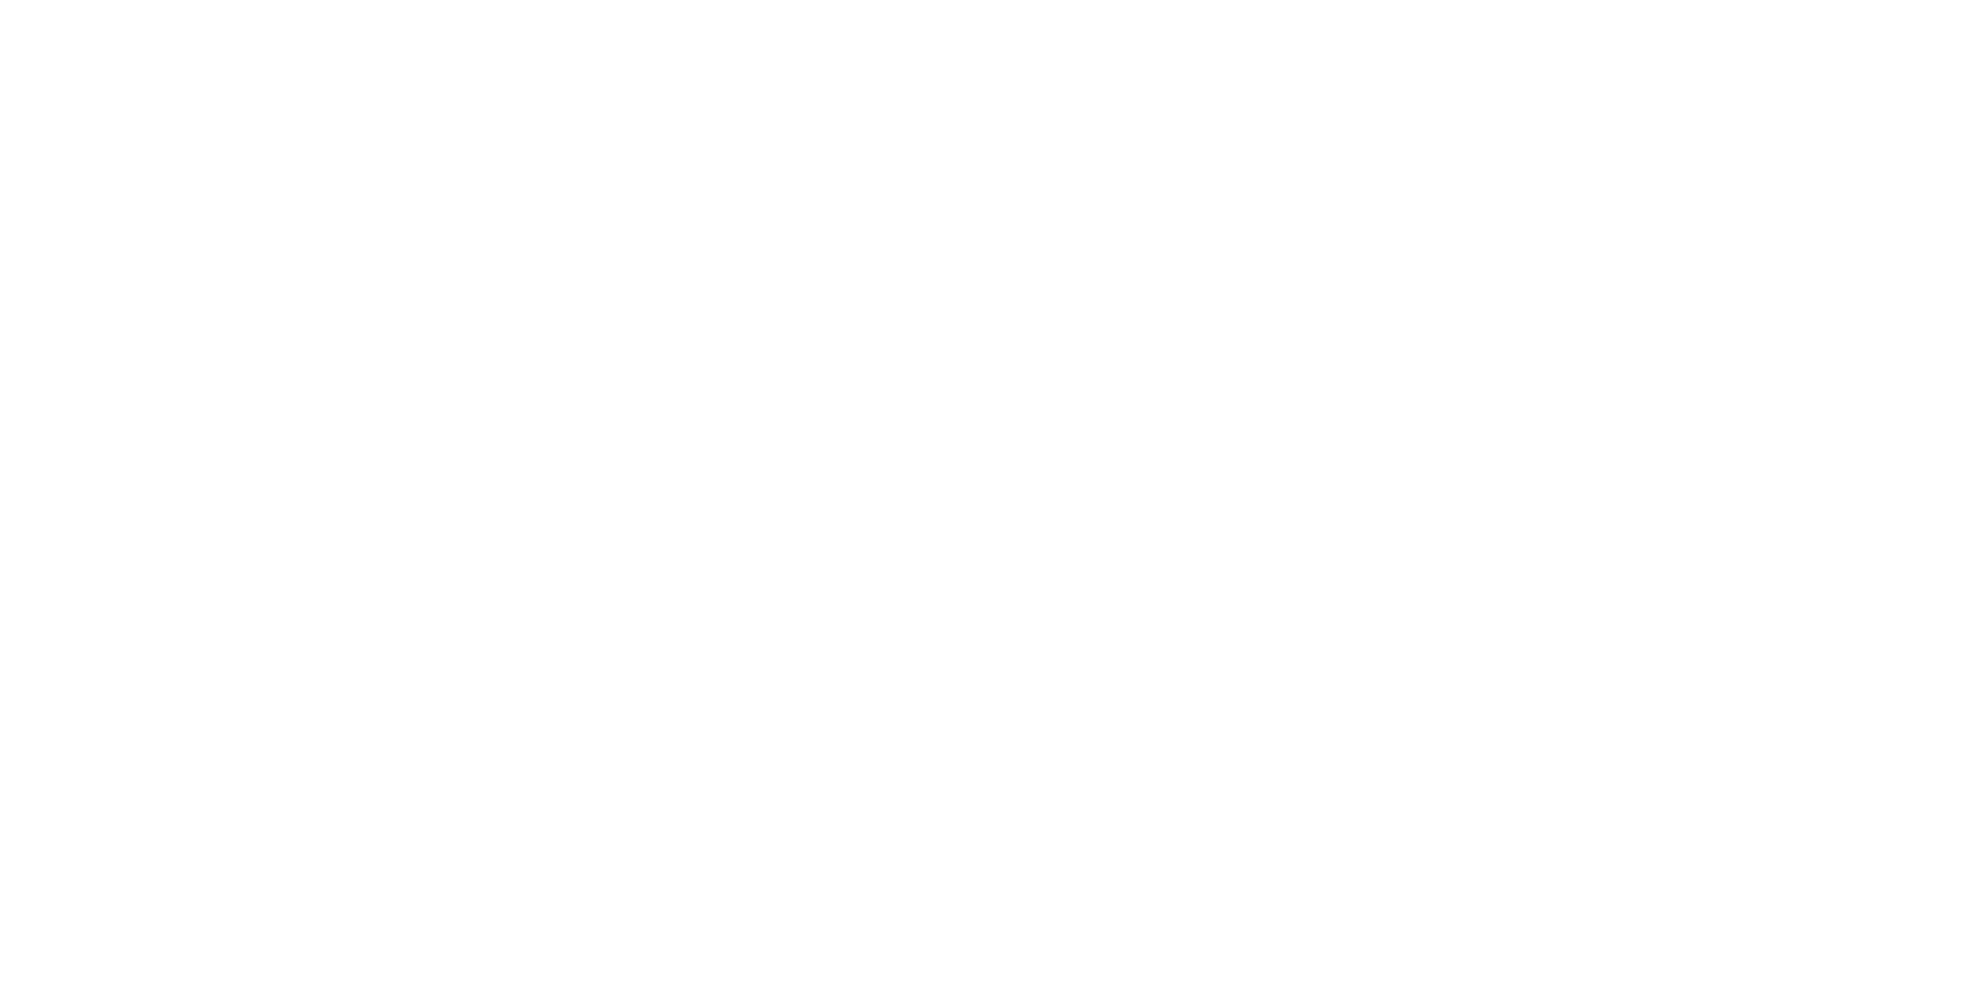 Logo Backstage